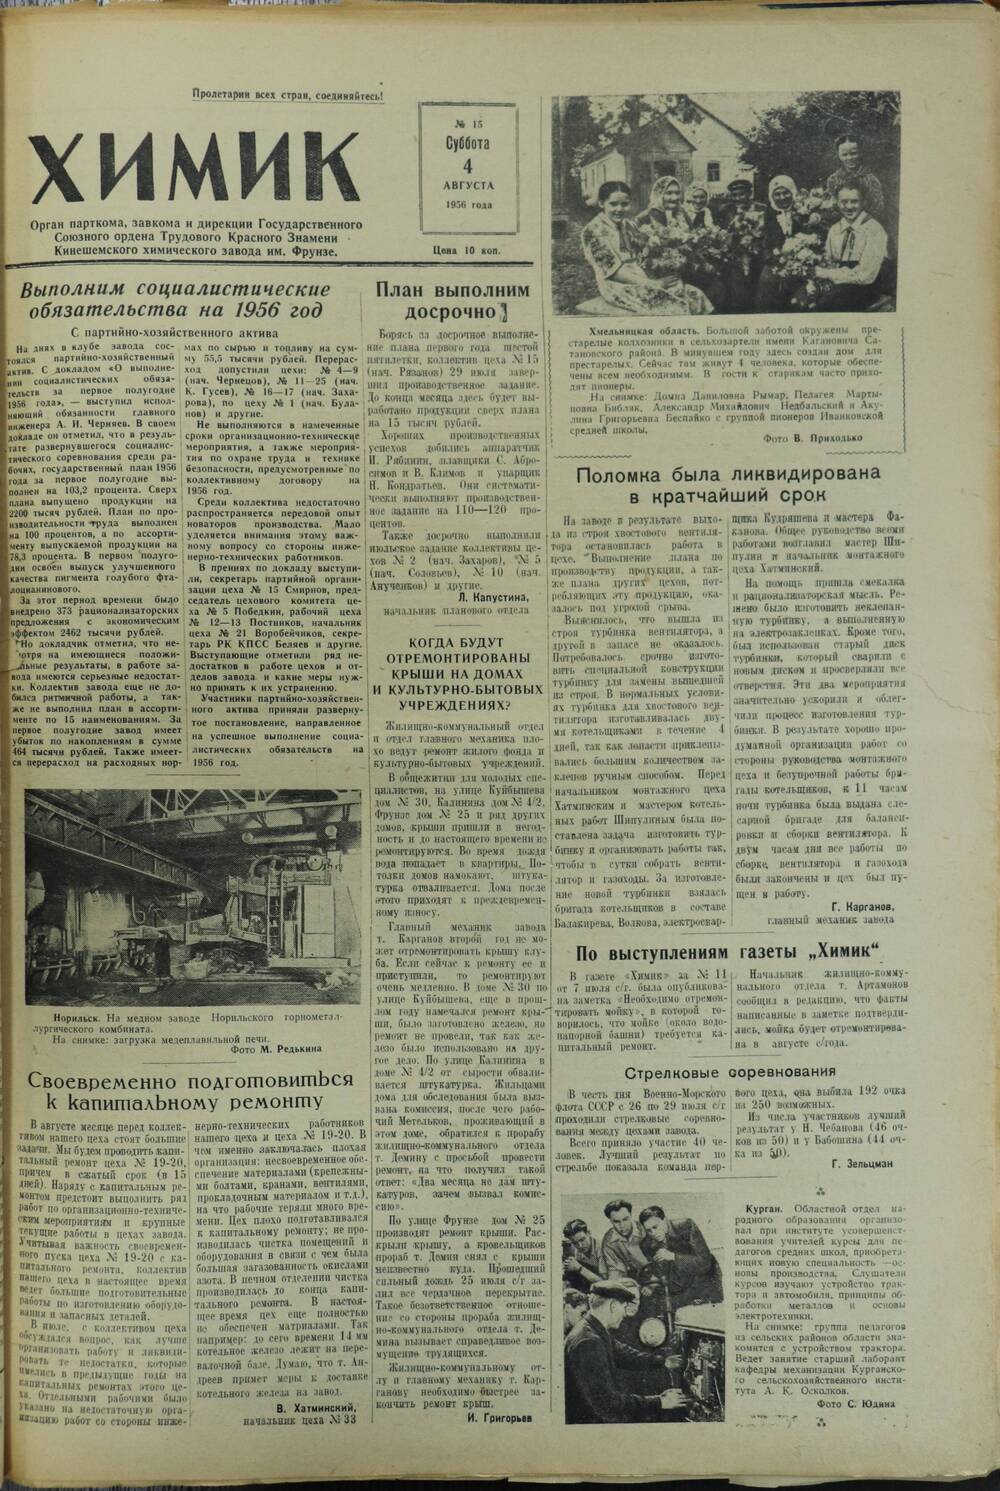 Газета «Химик» № 15 от 4 августа 1956 года.